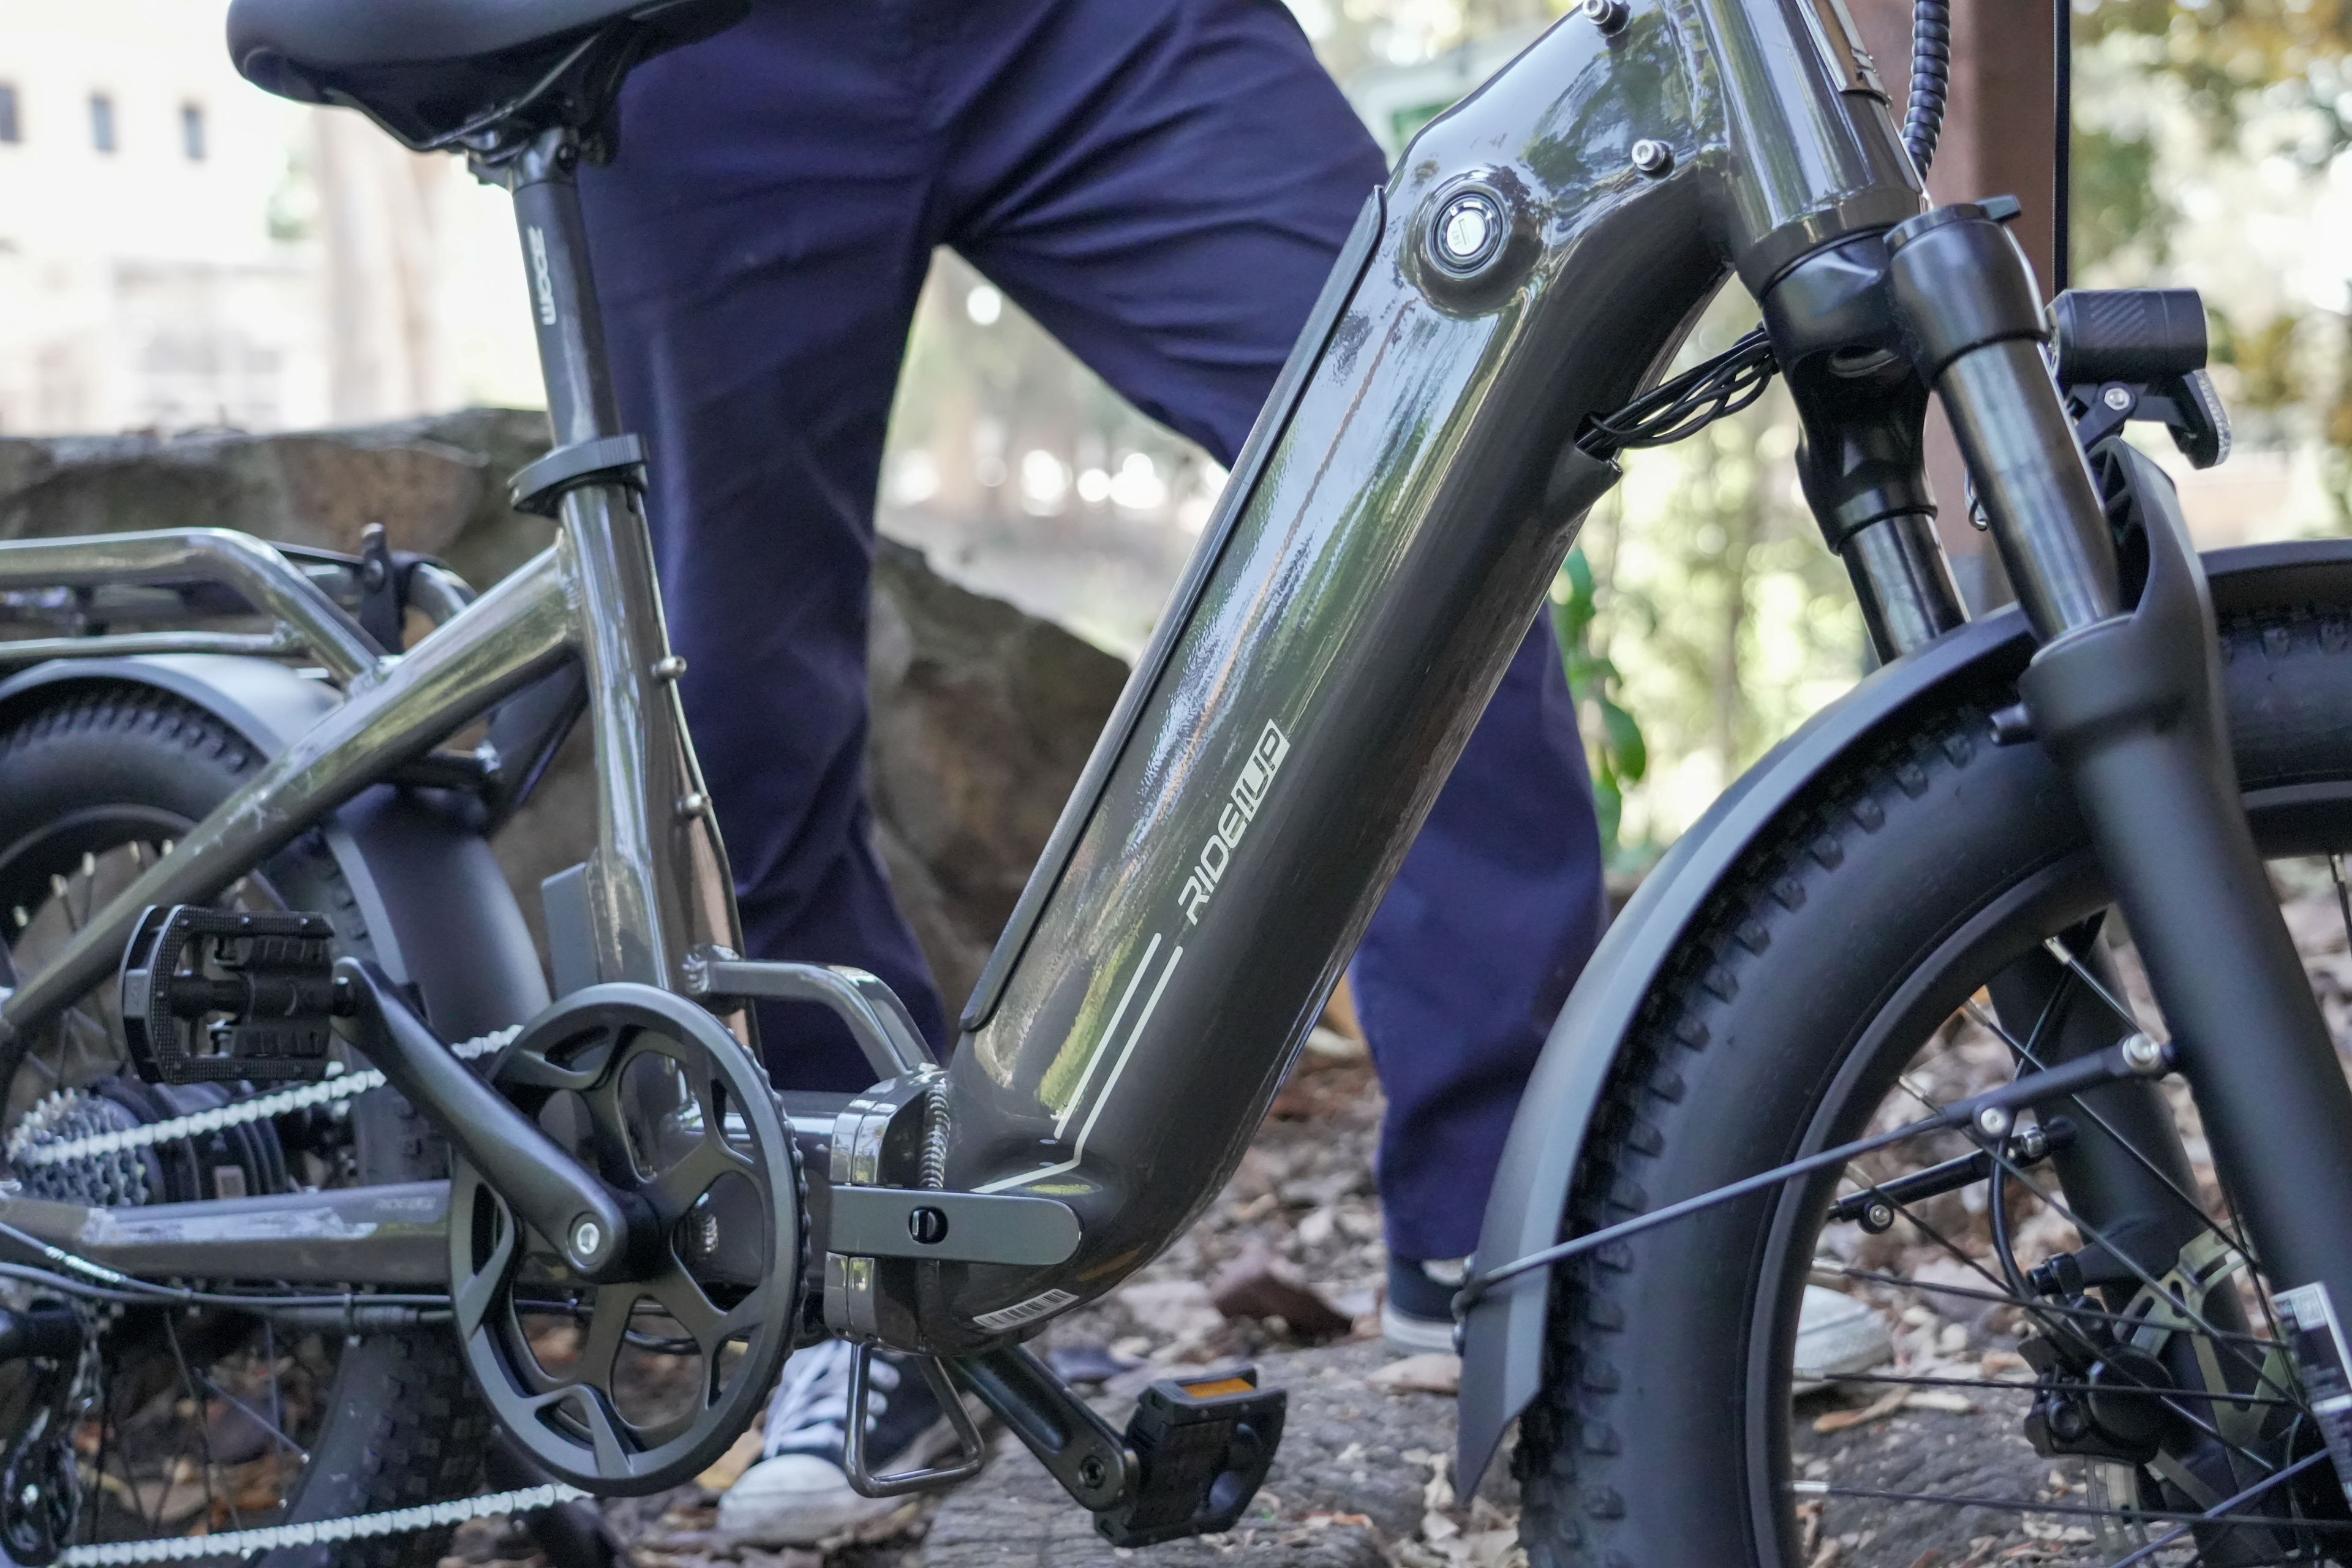 Ride1Up Introduce the Portola Folding Ebike